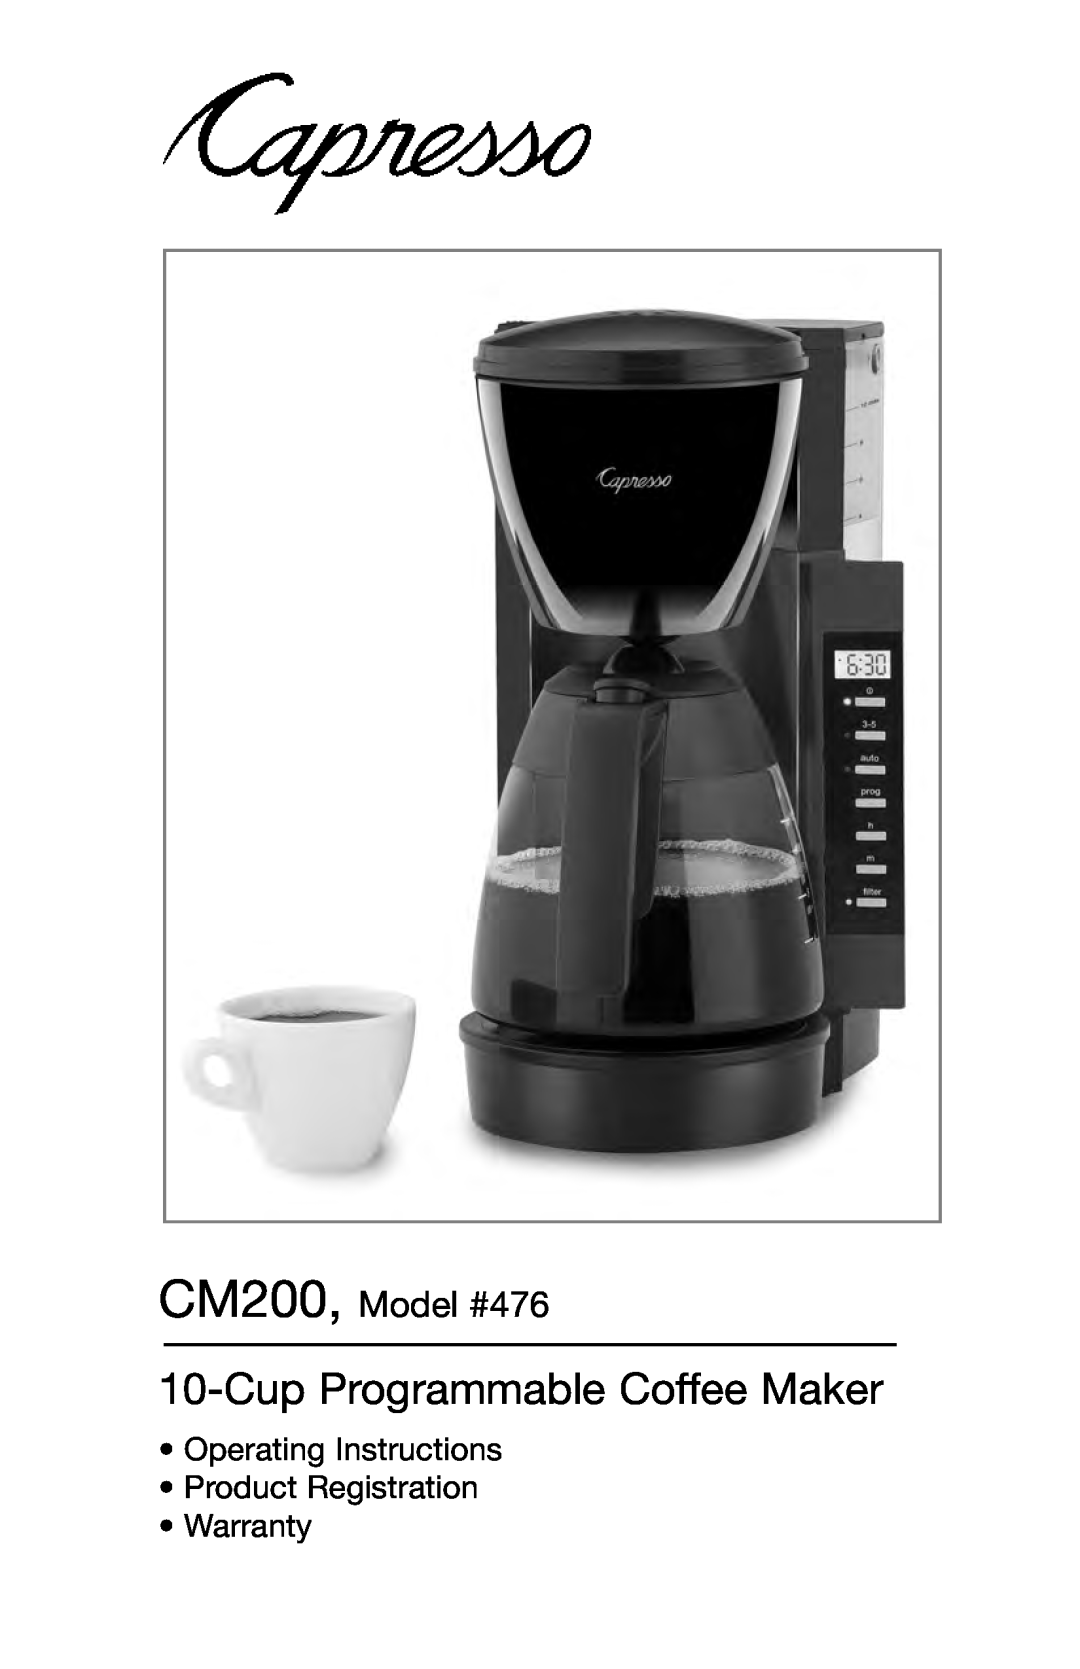 Capresso warranty Cup Programmable Coffee Maker, CM200, Model #476 